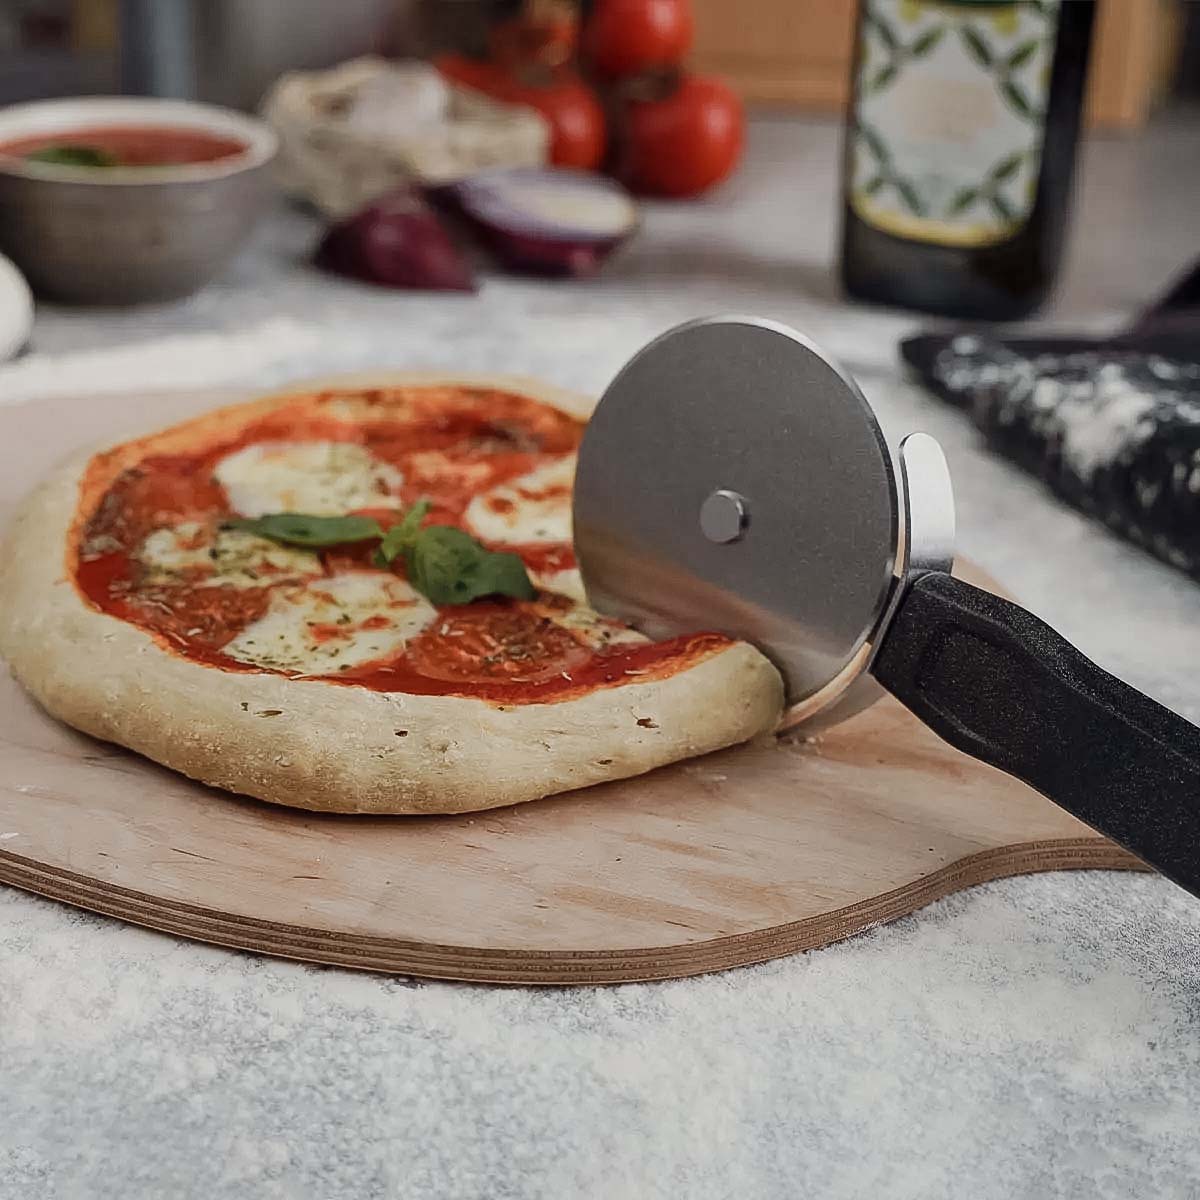 SANTOS Edelstahl Pizzaschneider - 27x2x10cm - Pizzaroller, Pizzamesser,  Pizza-Cutter - ergonomischem Griff - sicheres & verletzungsfreies schneiden | Pizzaschneider